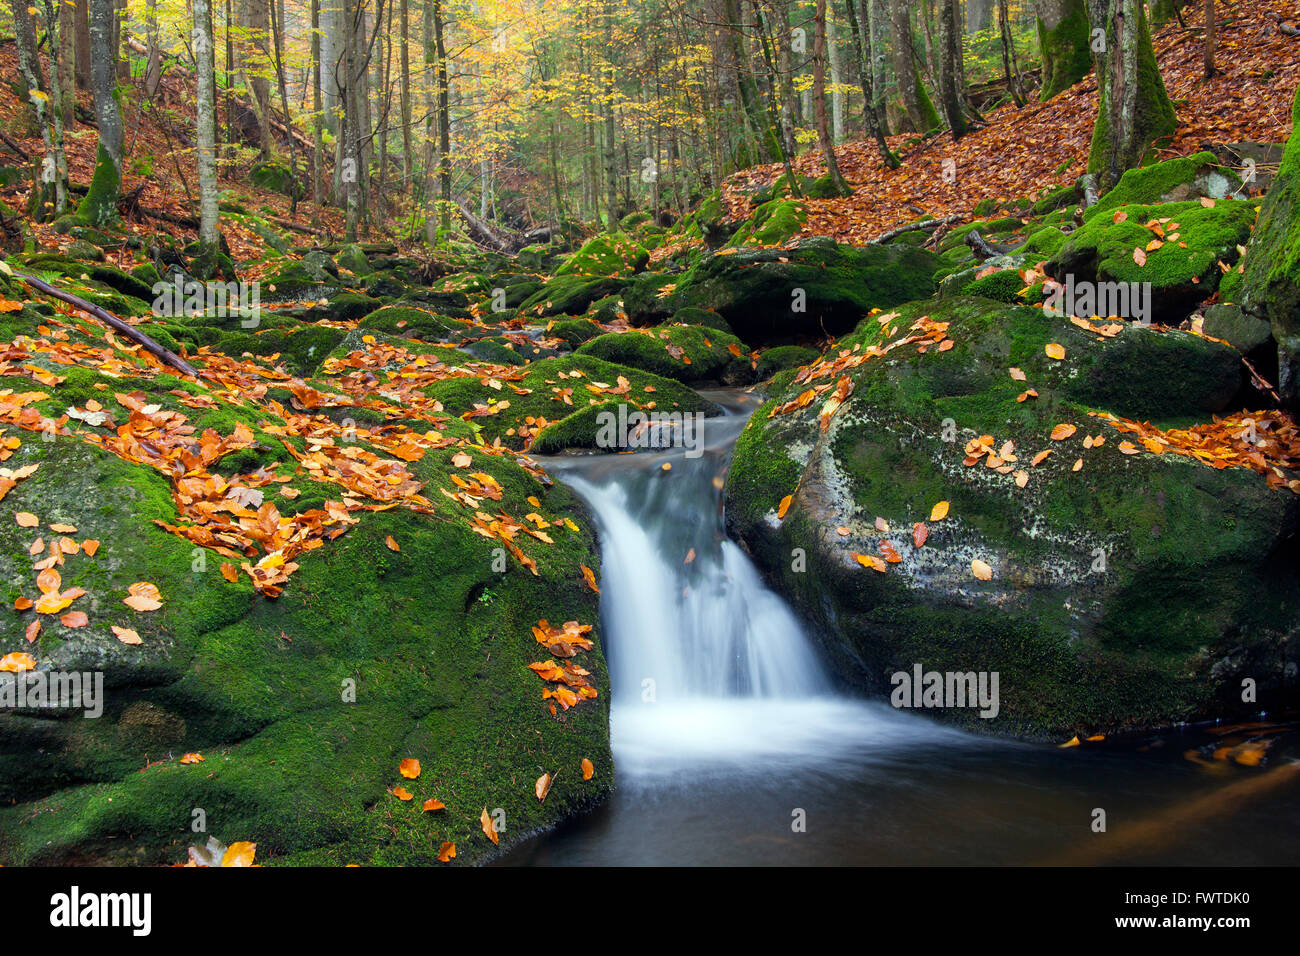 Stream Sagwasser im herbstlichen Wald, Nationalpark Bayerischer Wald, Bayern, Deutschland Stockfoto